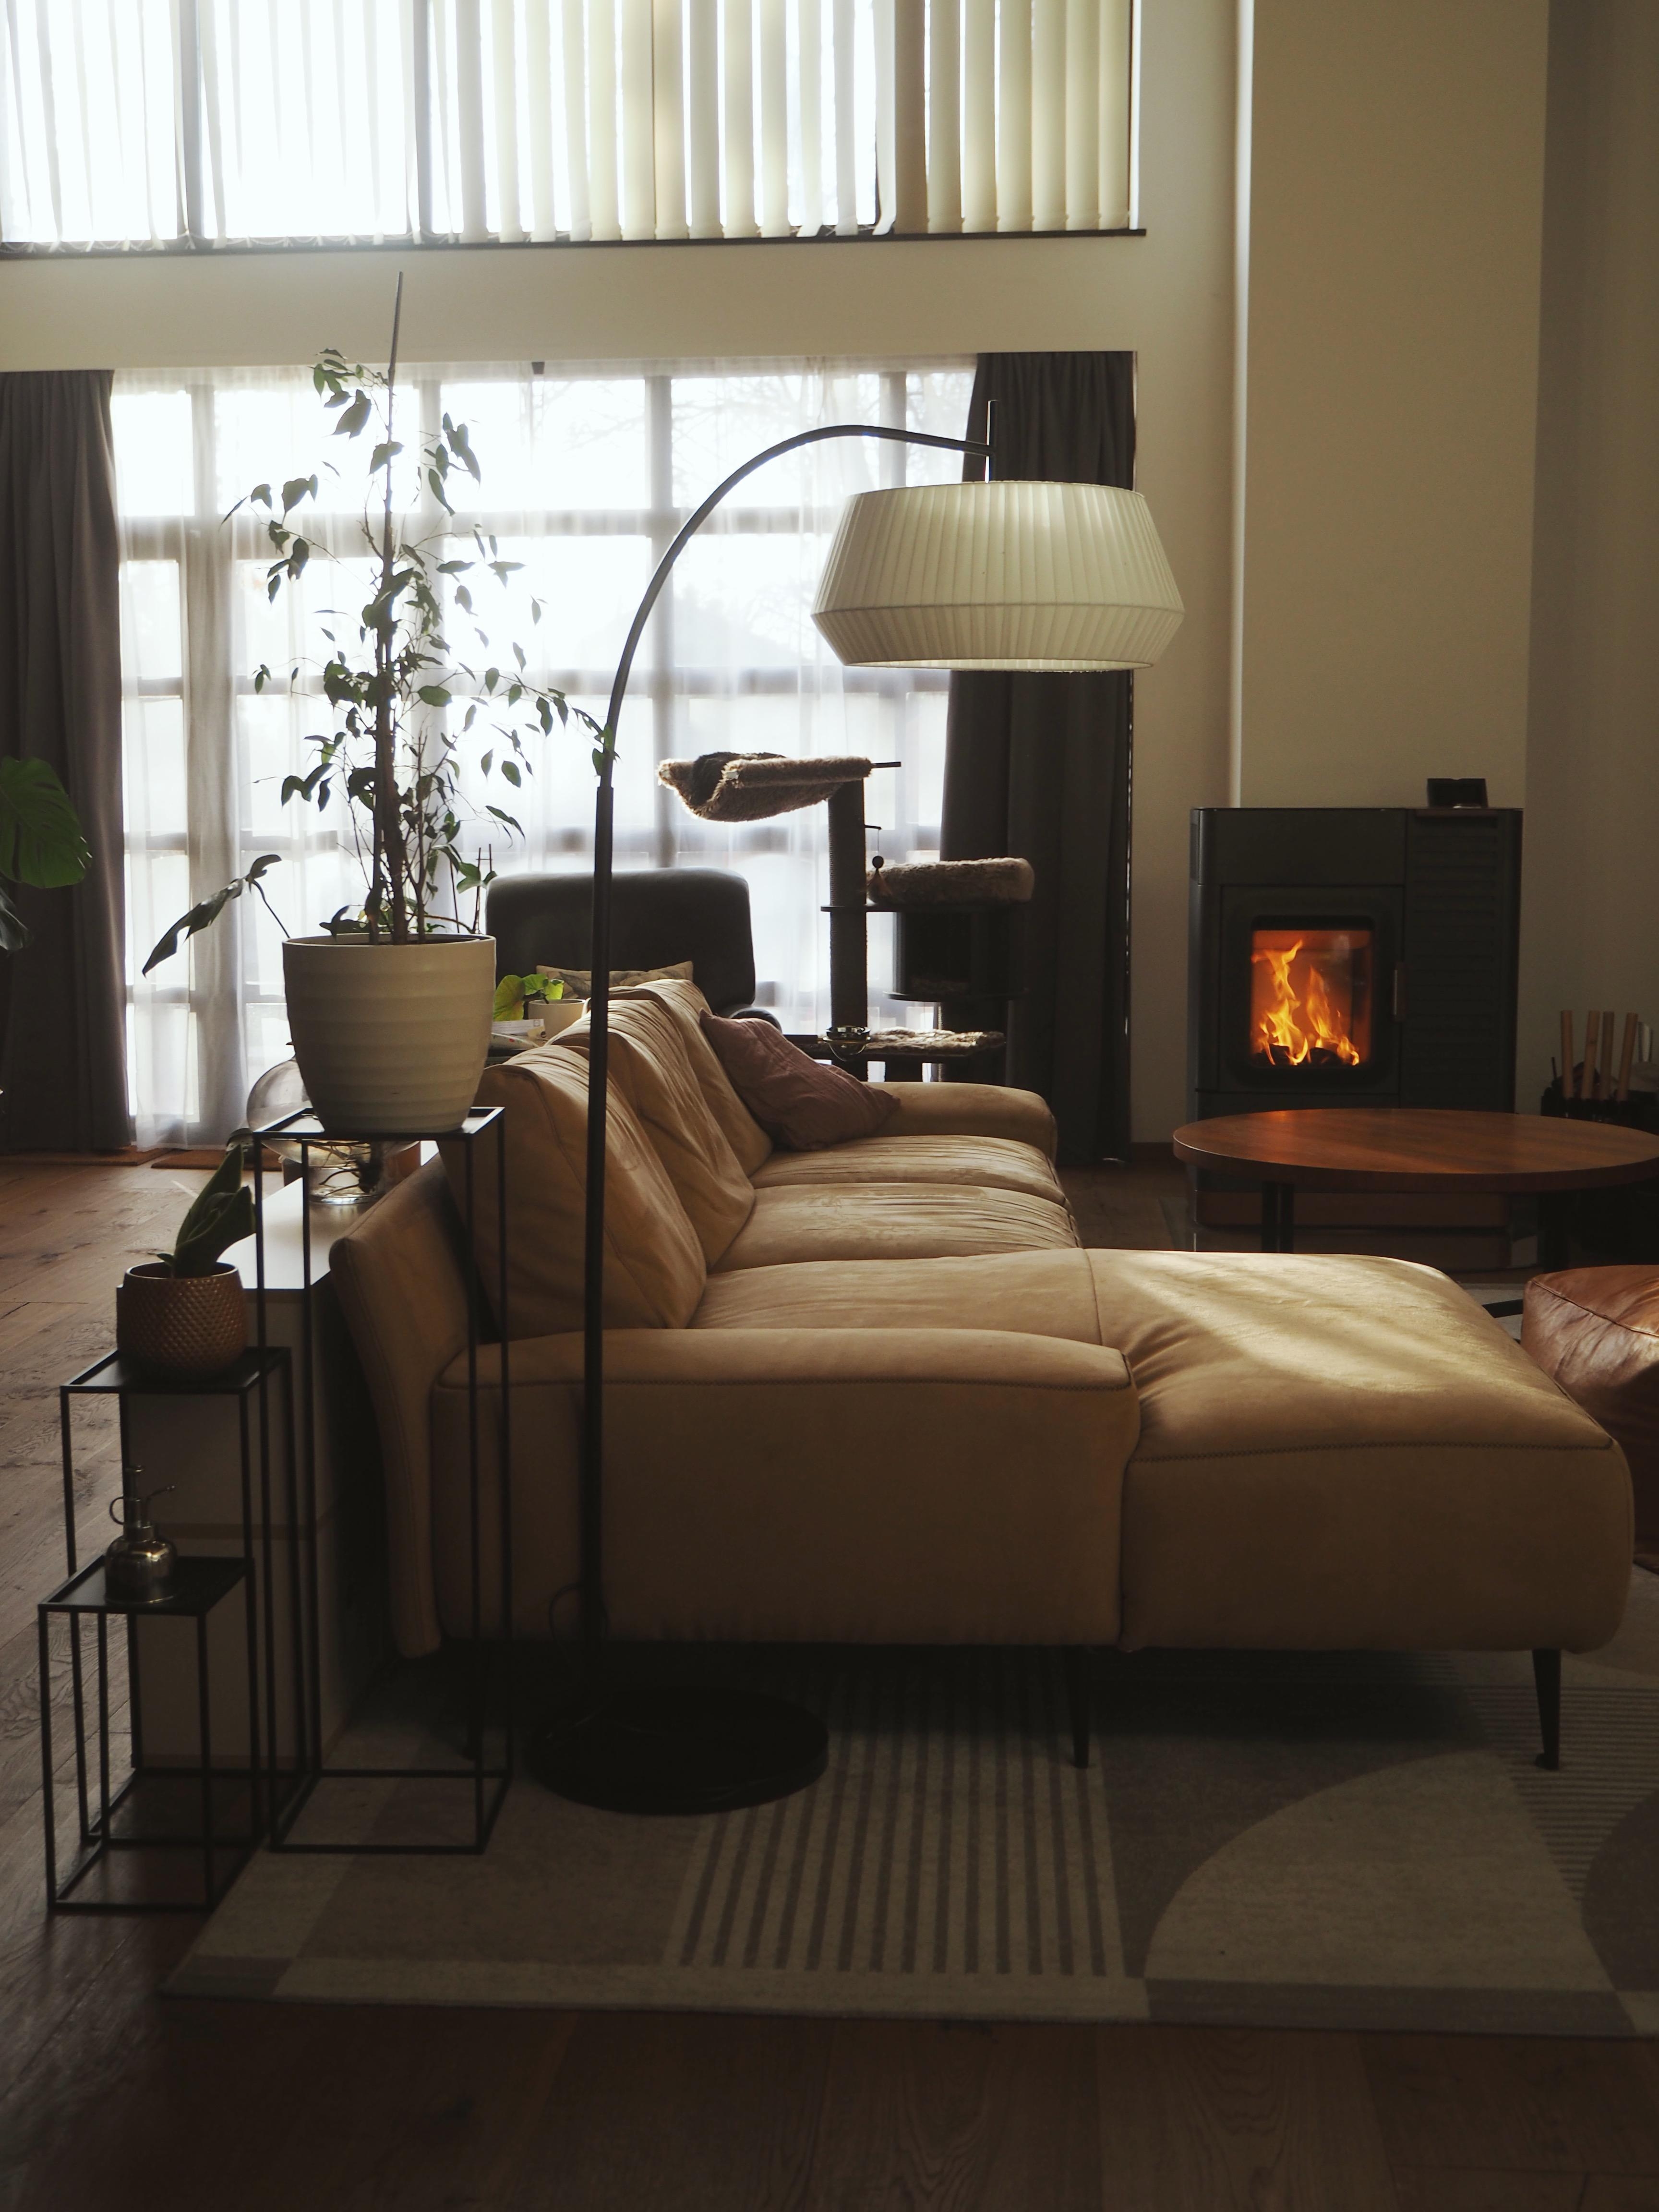 Jänner-Nachmittagssonne #livingroom #wohnzimmer #couchstyle